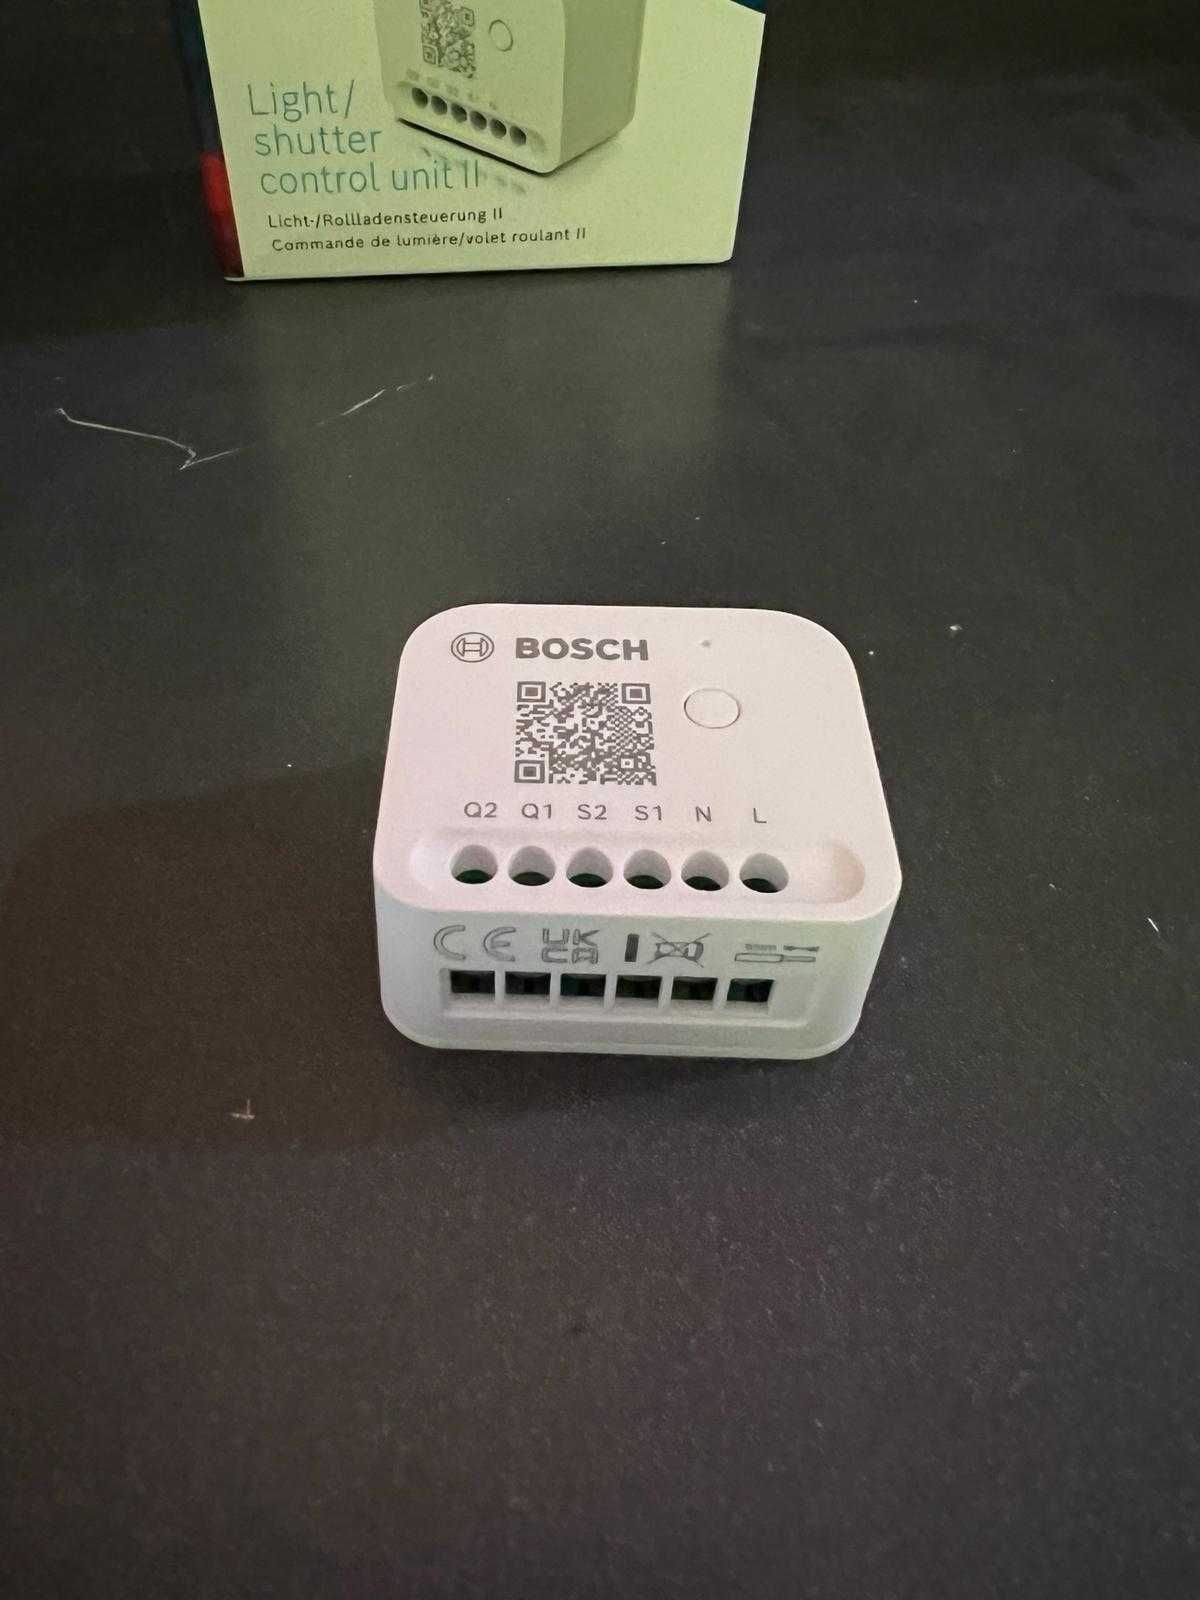 Bosch Smart Home Light/Shutter Control II - controlul luminii